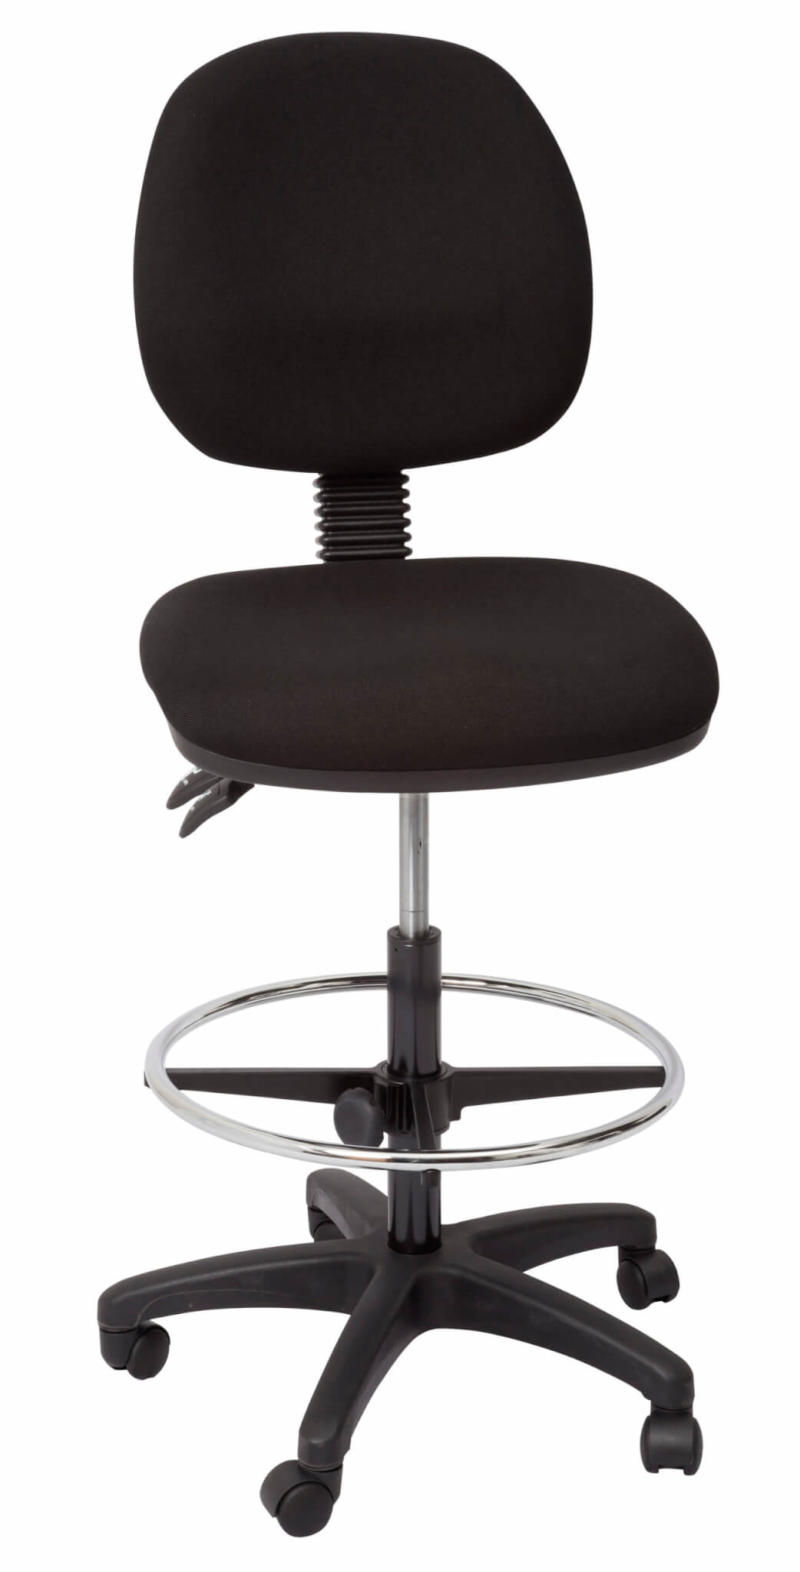 B30-910058 - EC070BM Drafting chair